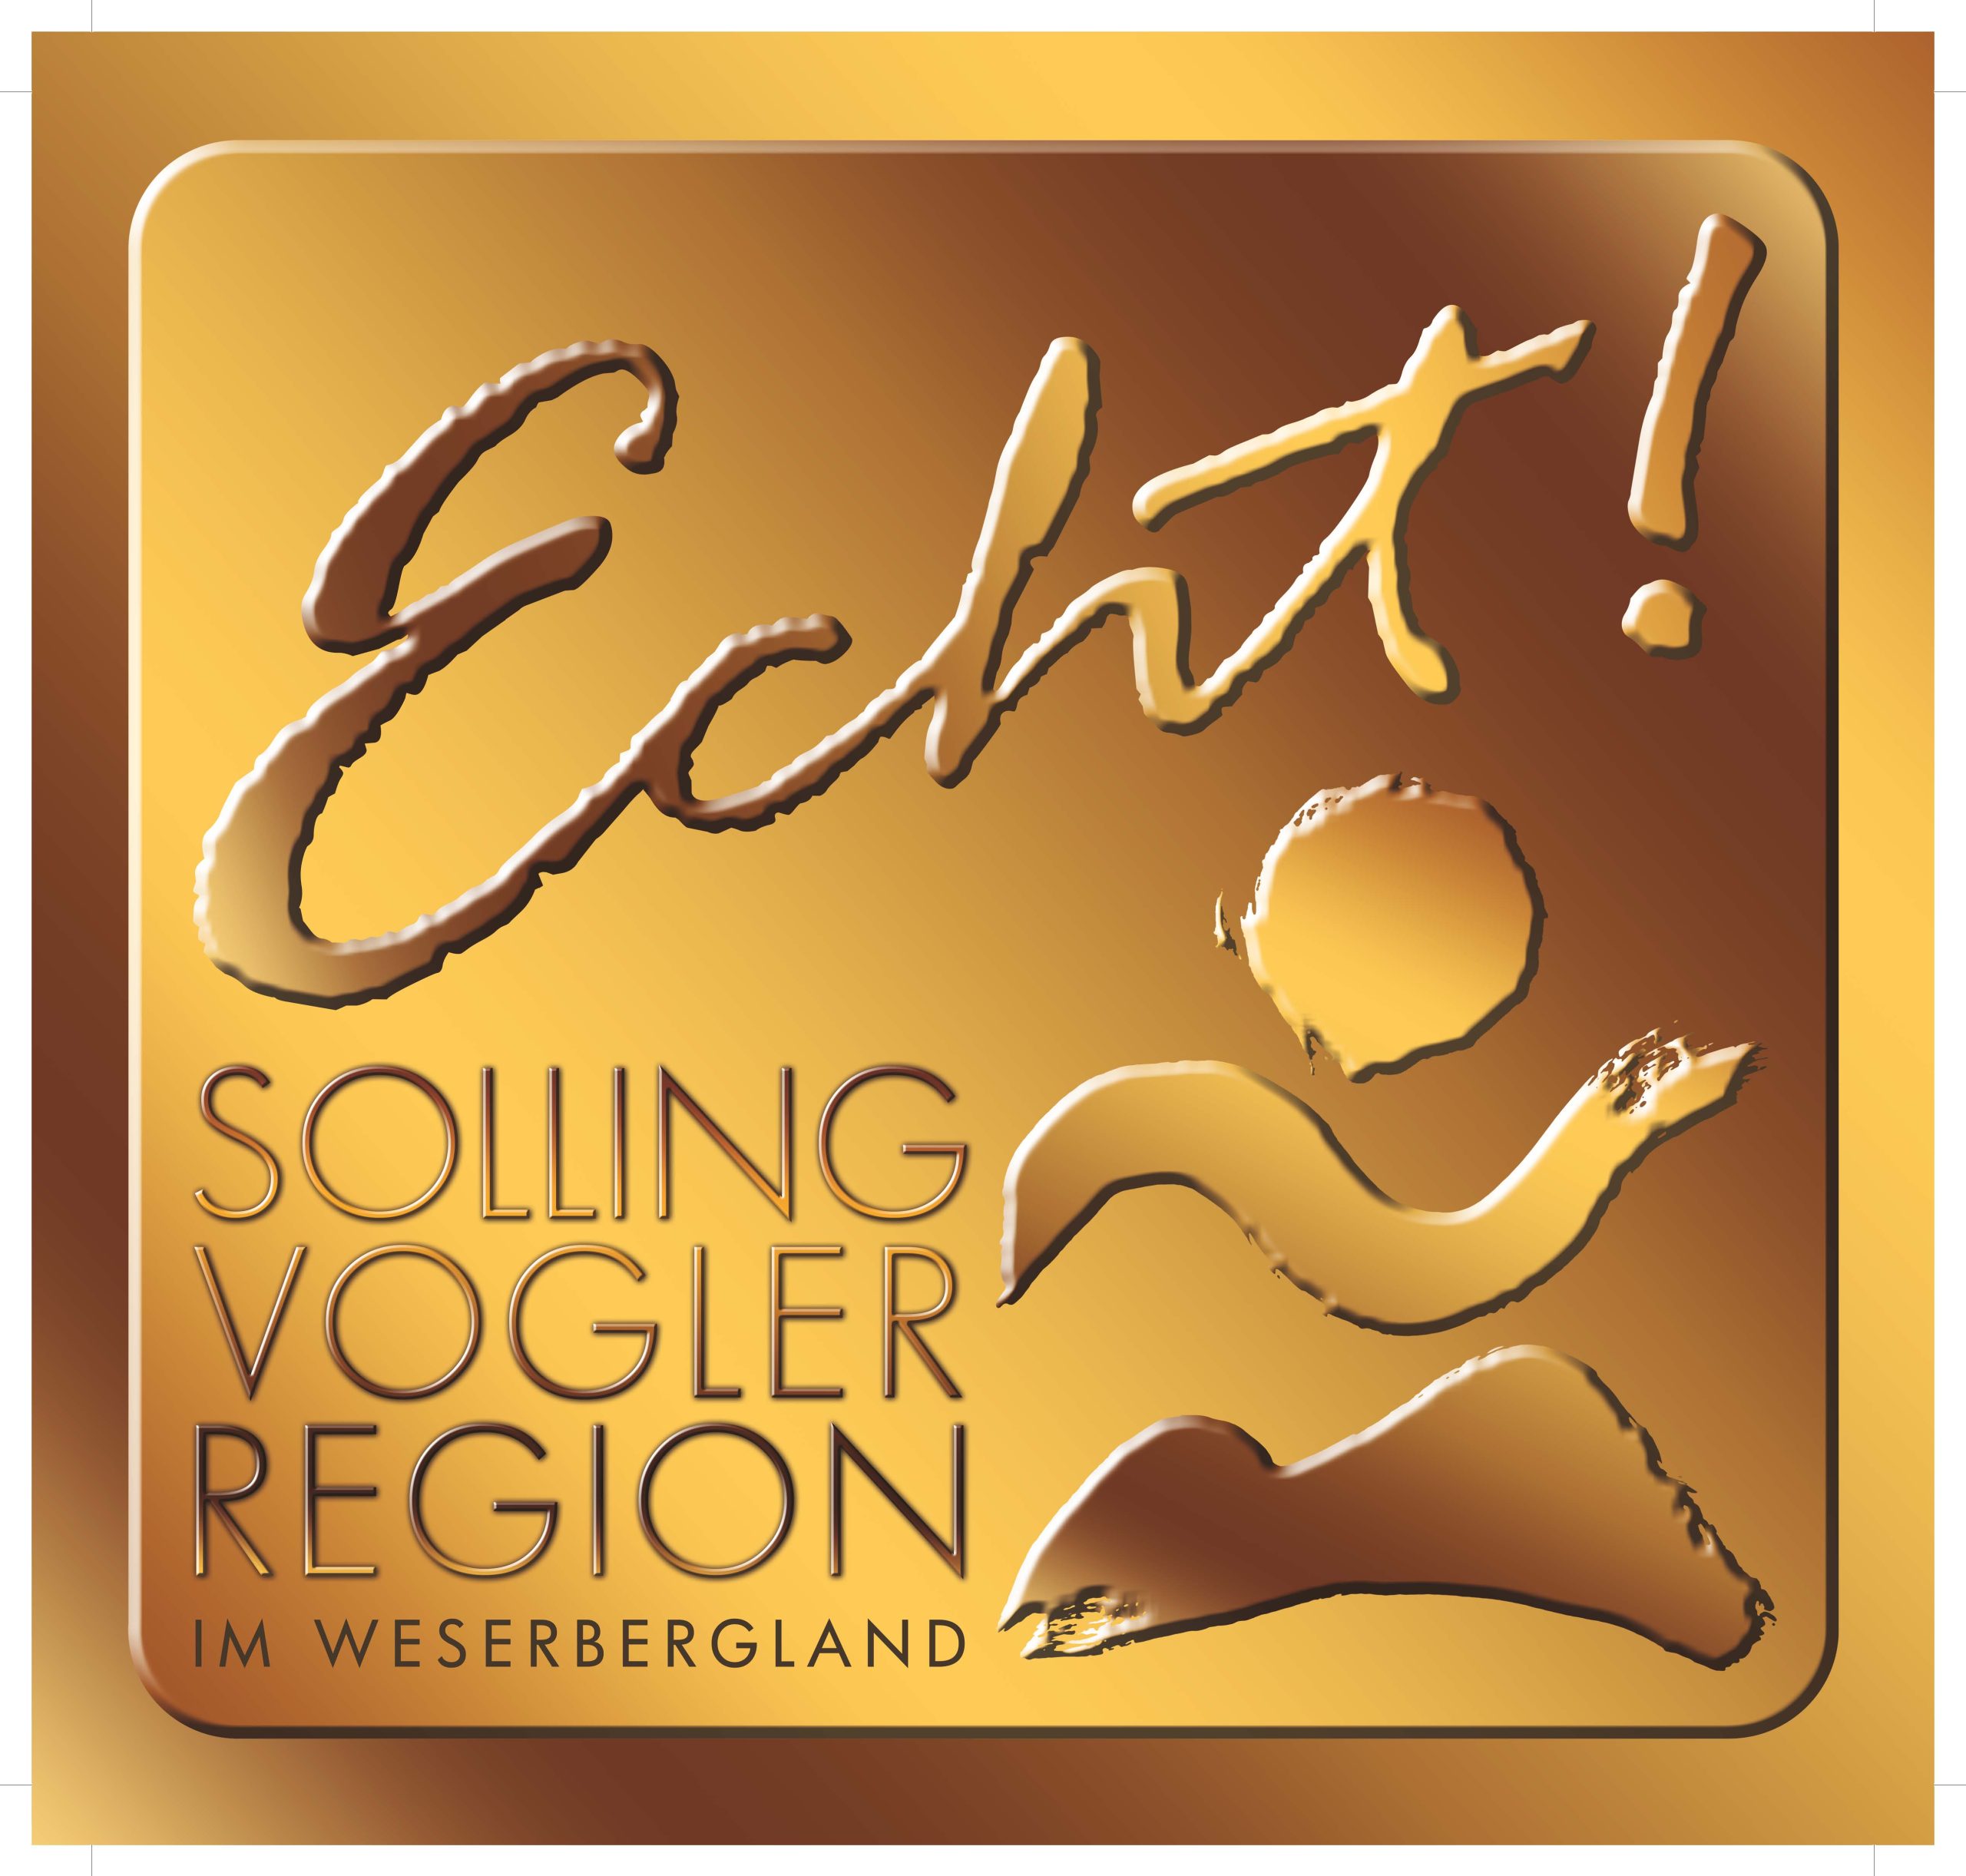 Regionale Produkte Echt Solling-Vogler Region